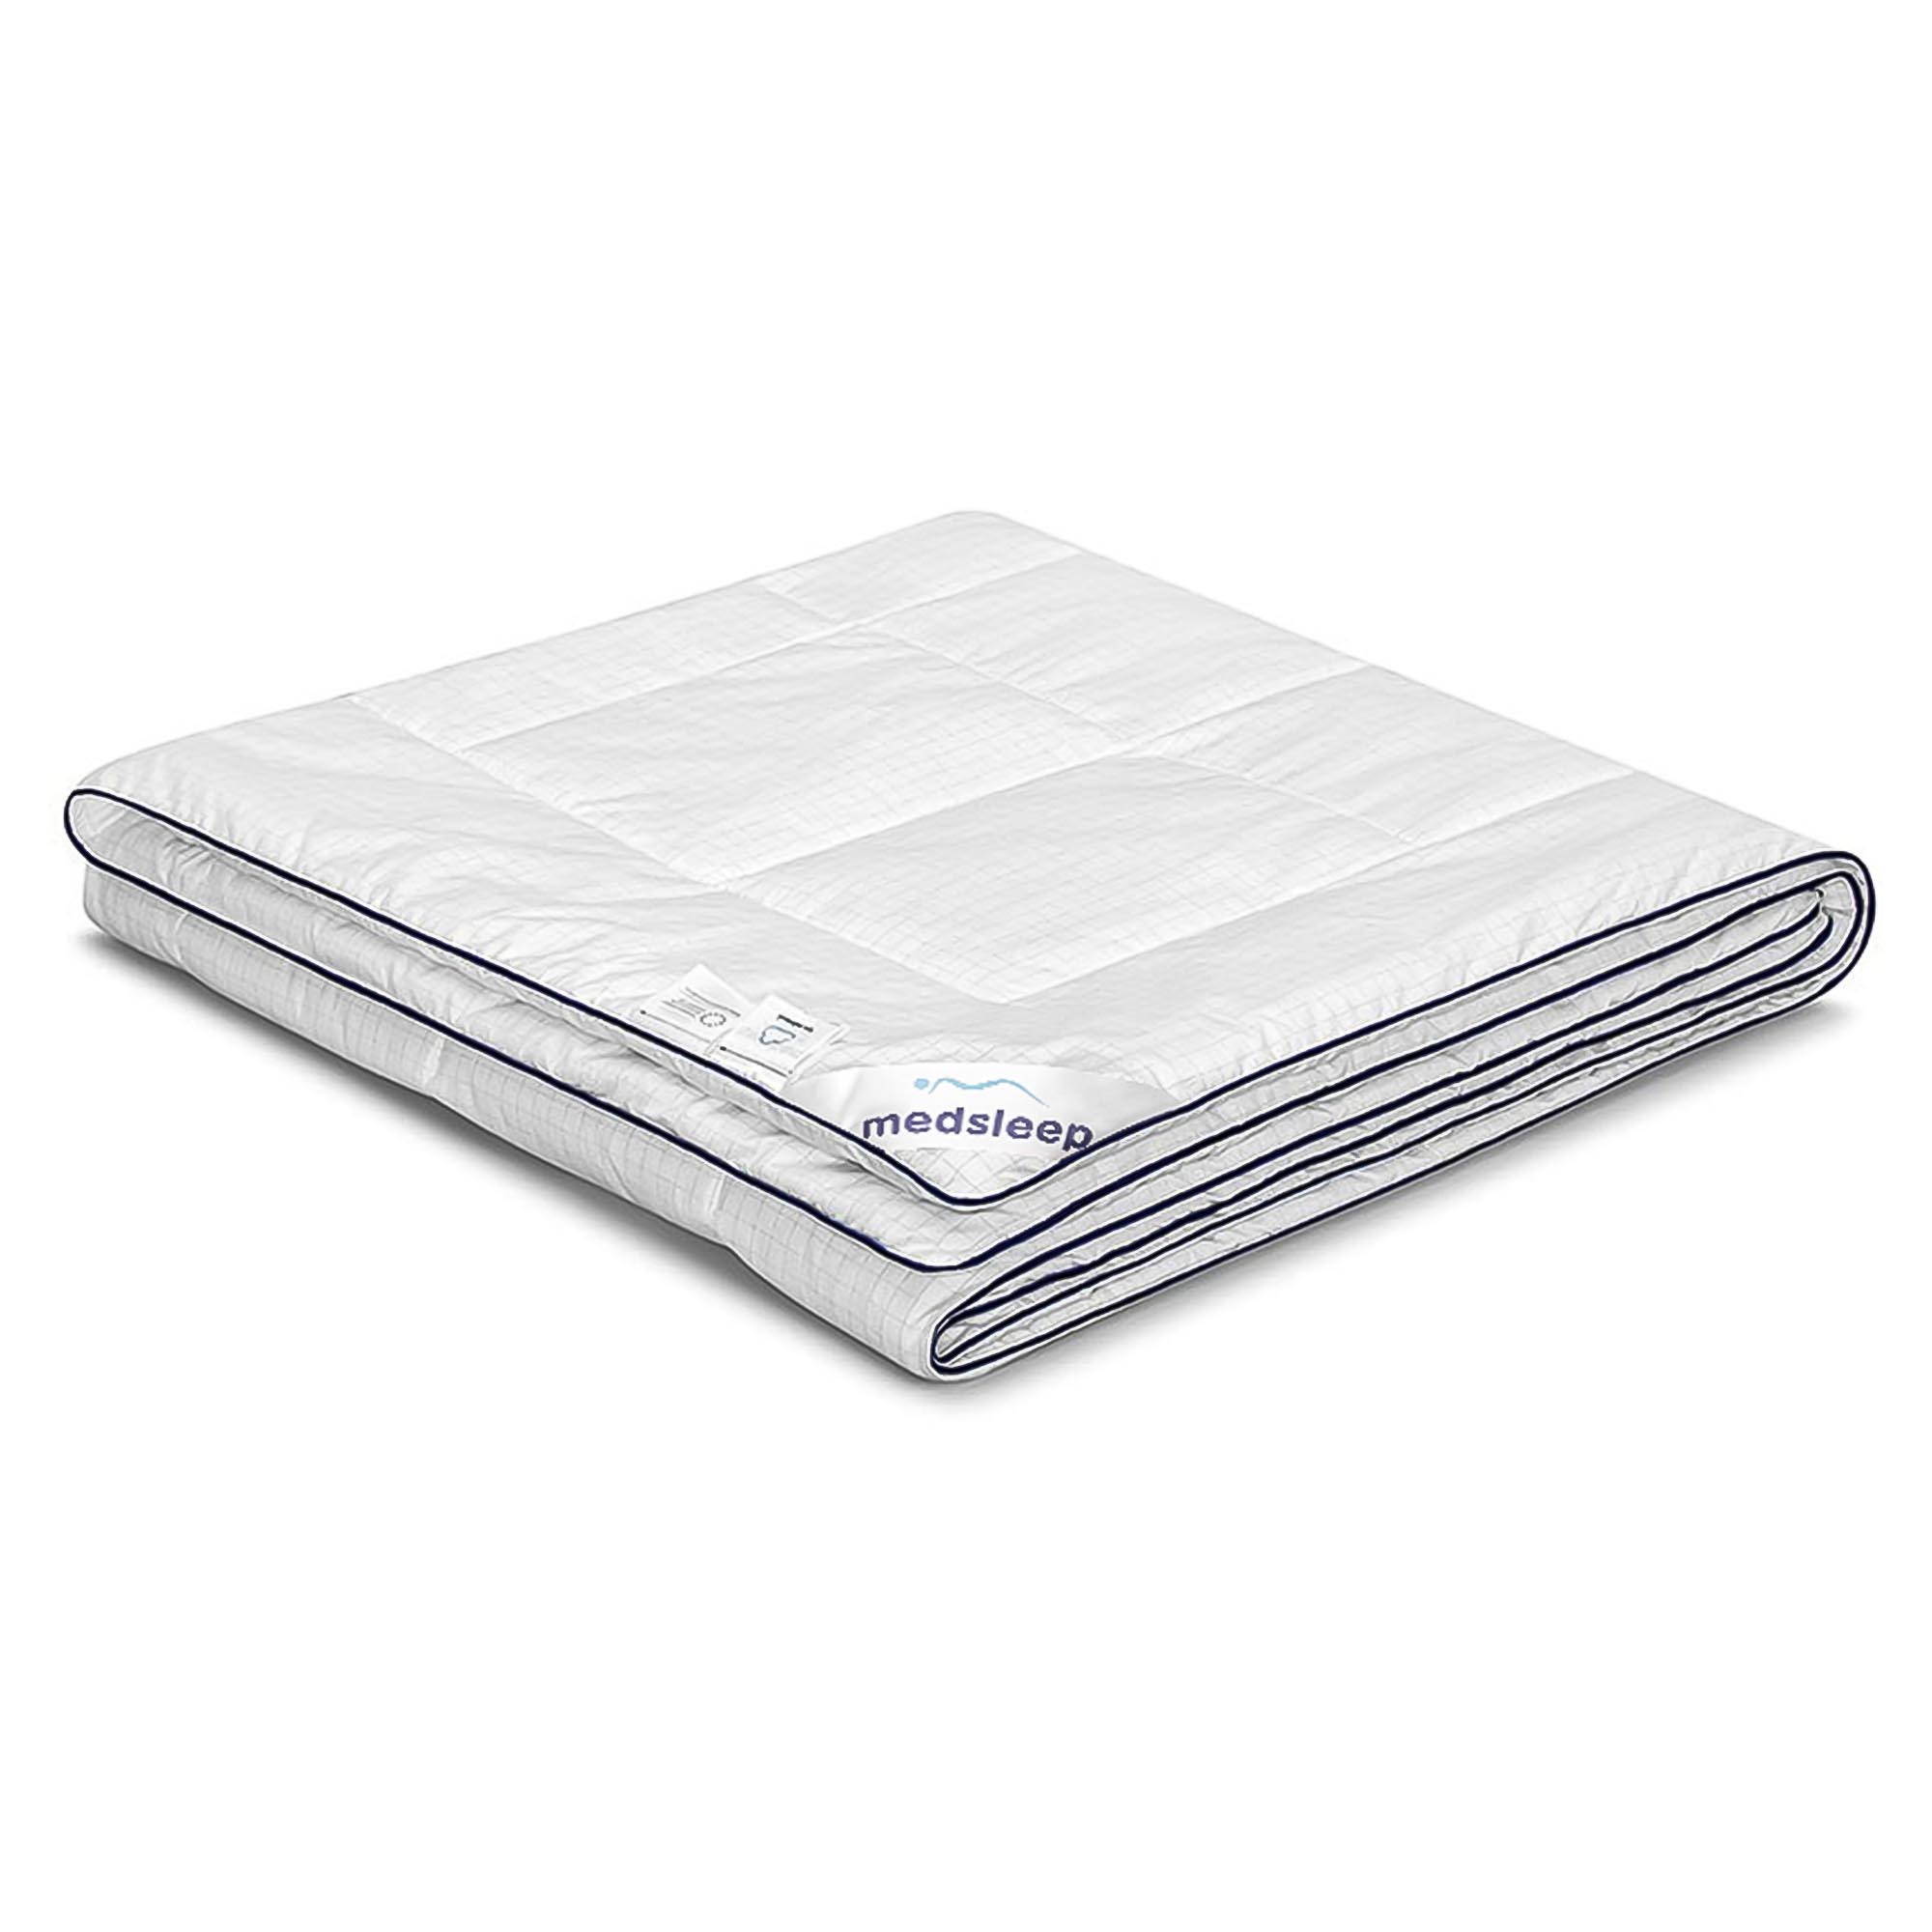 Одеяло Medsleep Nubi белое 140х200 см одеяло лебяжий пух premium р 140х205